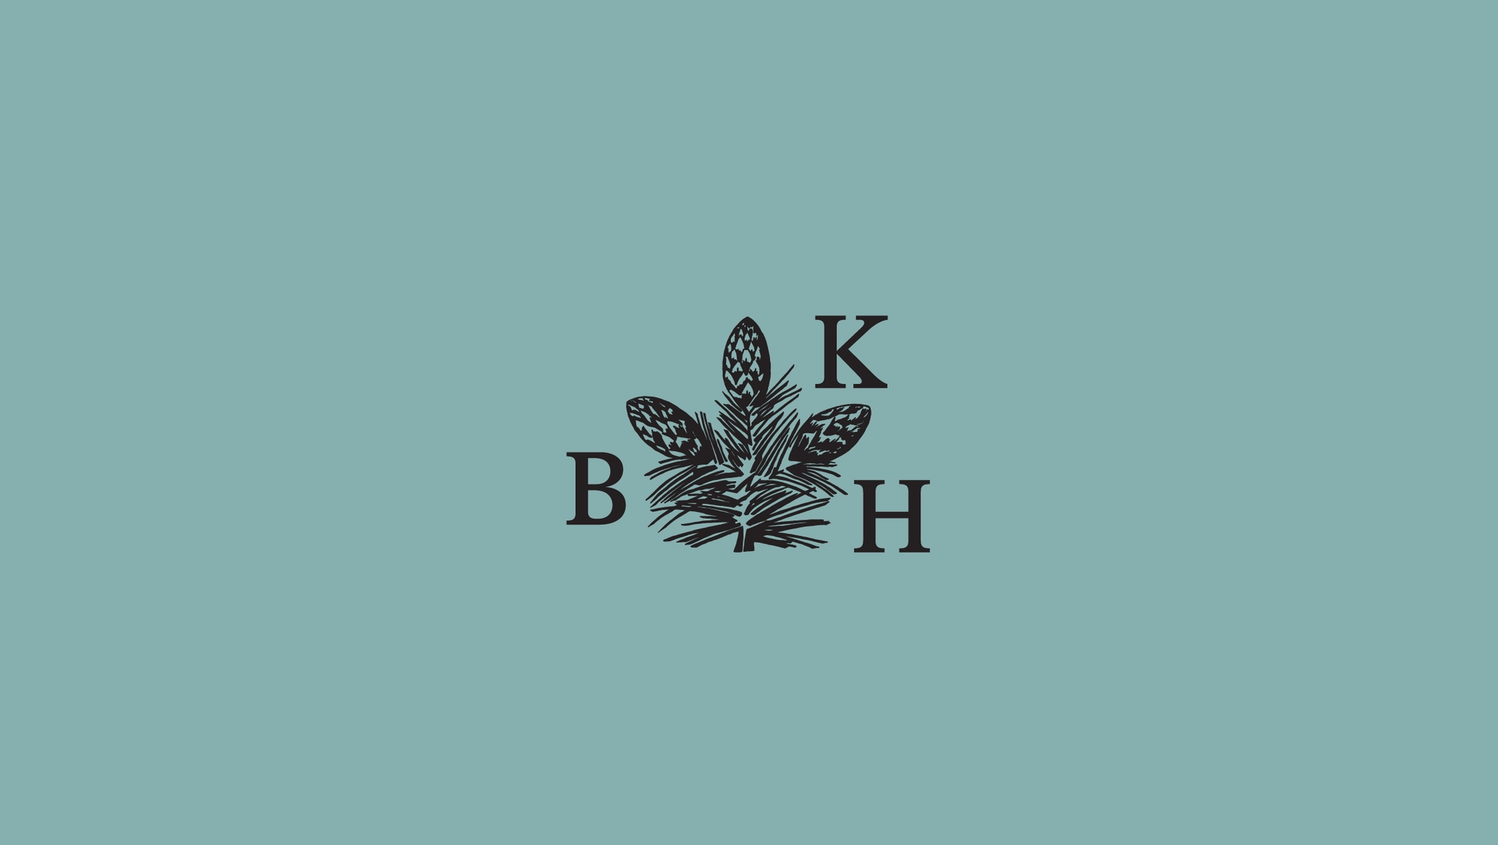 Bkh grön bakgrund